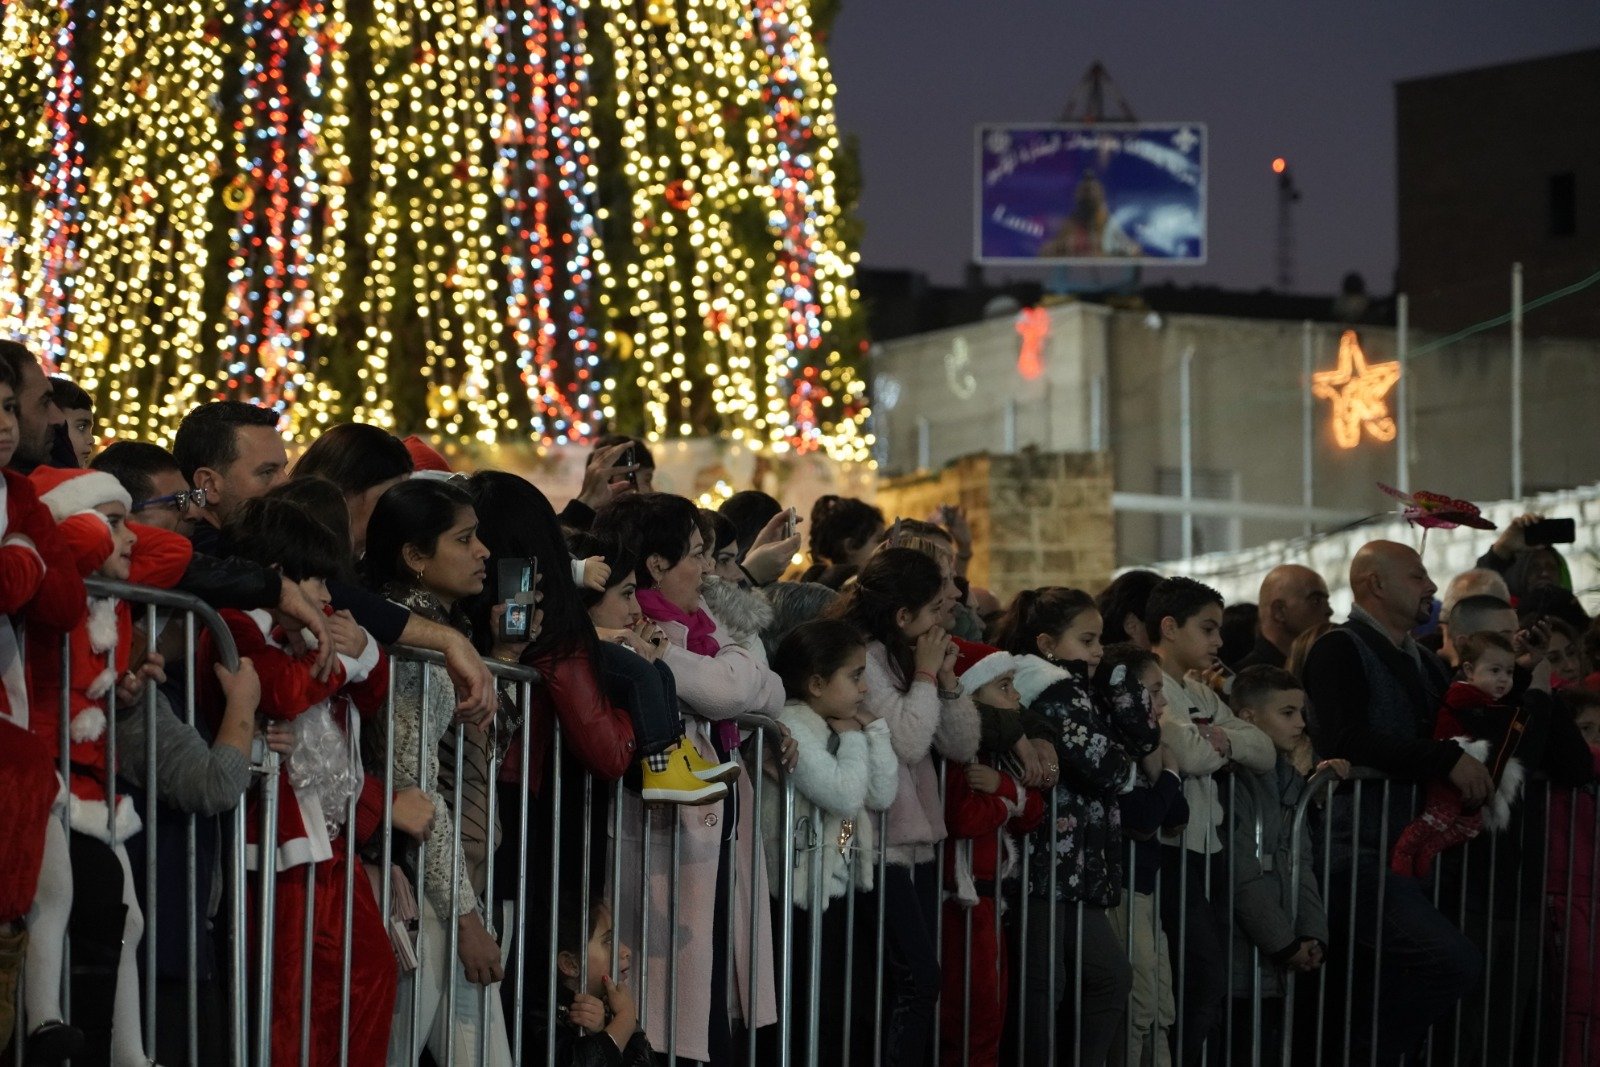 بالصور: "بكرا" يرصد فرحة استقبال الميلاد في الناصرة -50